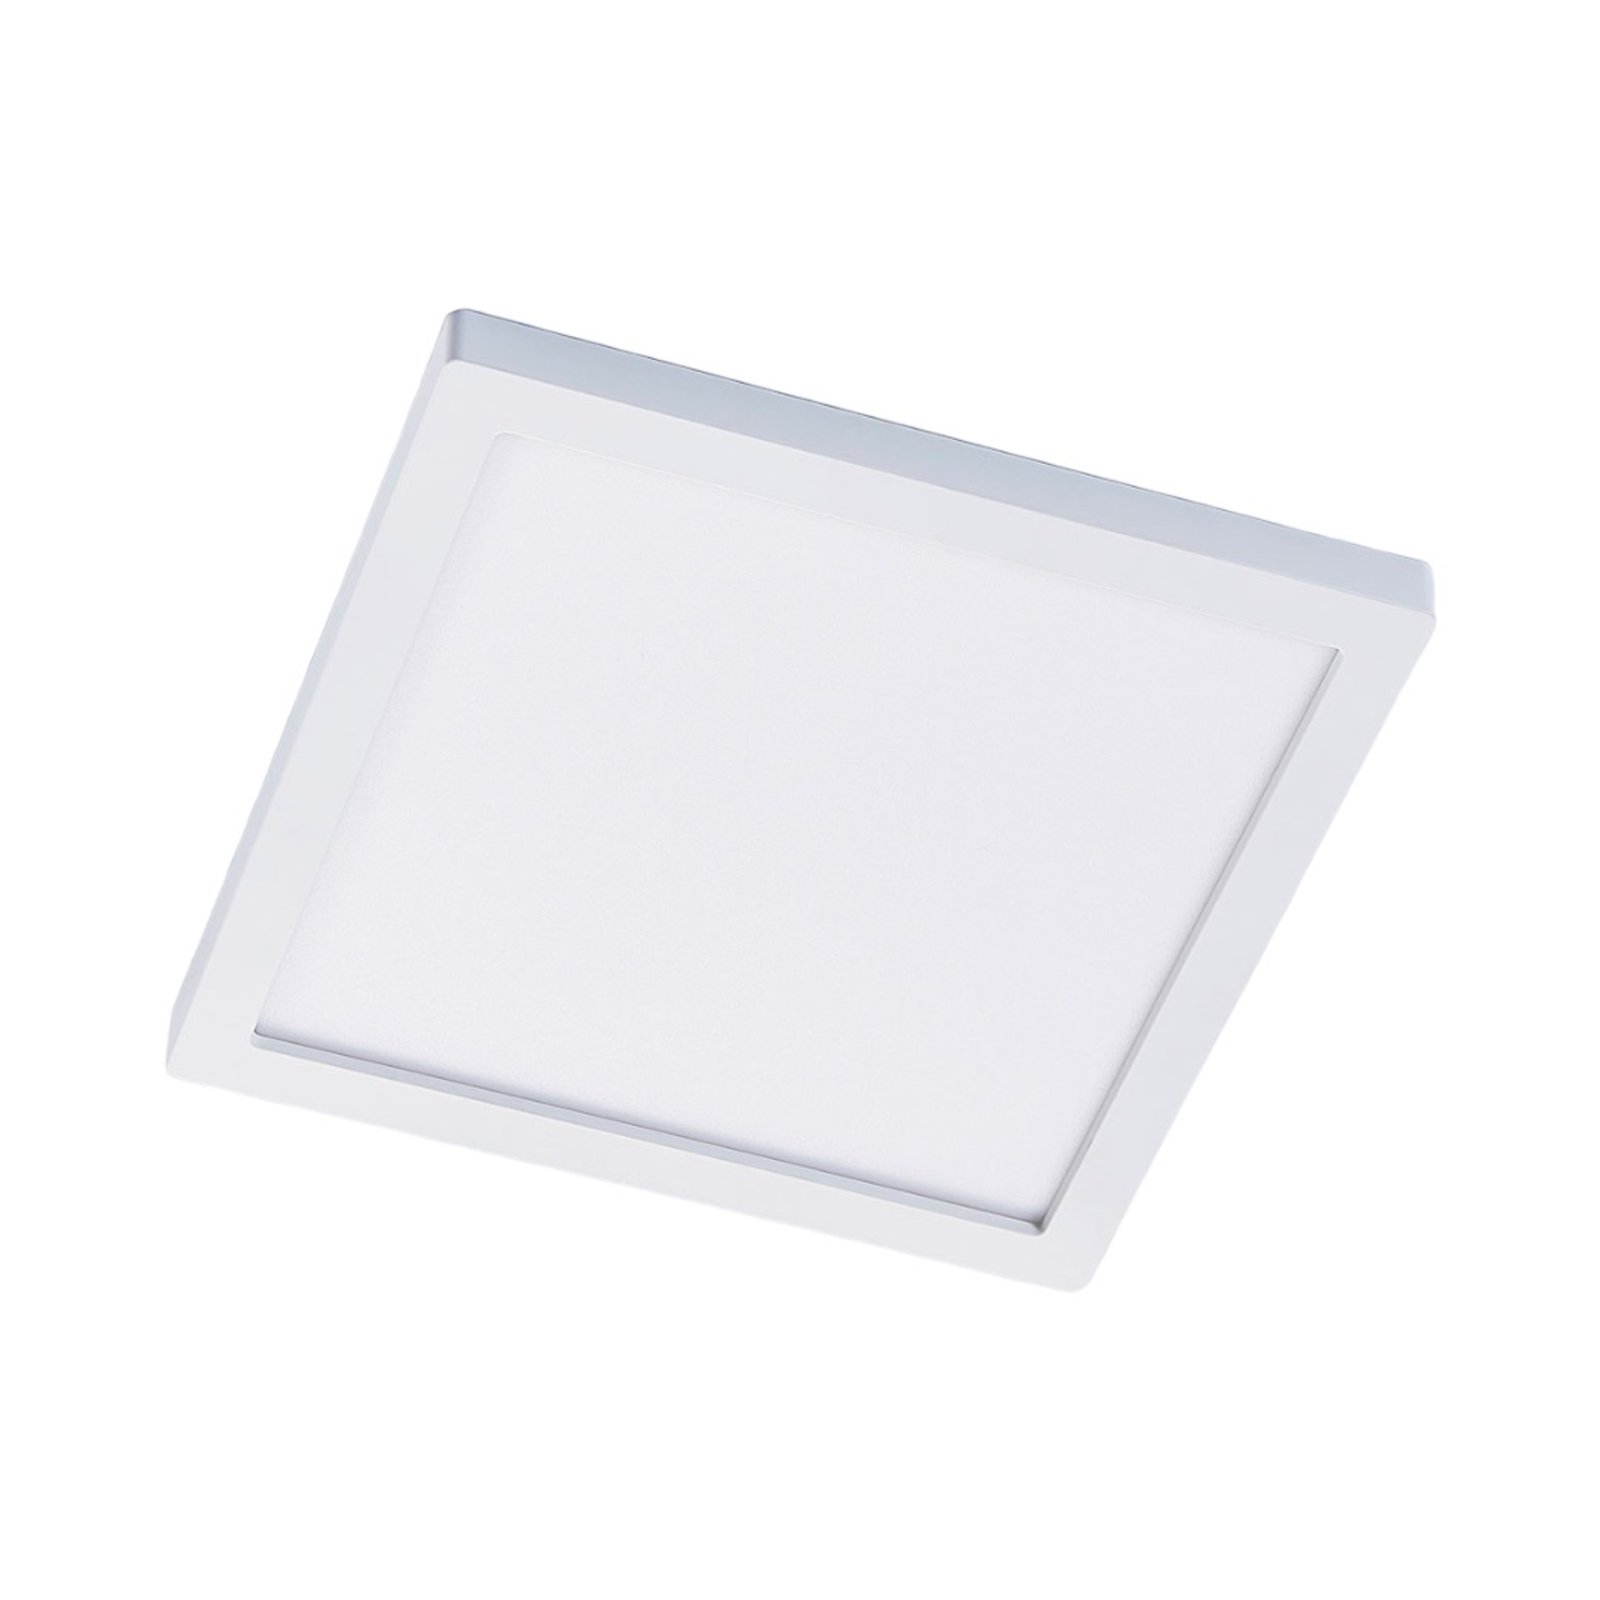 Solvie LED-taklampe, hvit, kantet, 30 x 30 cm